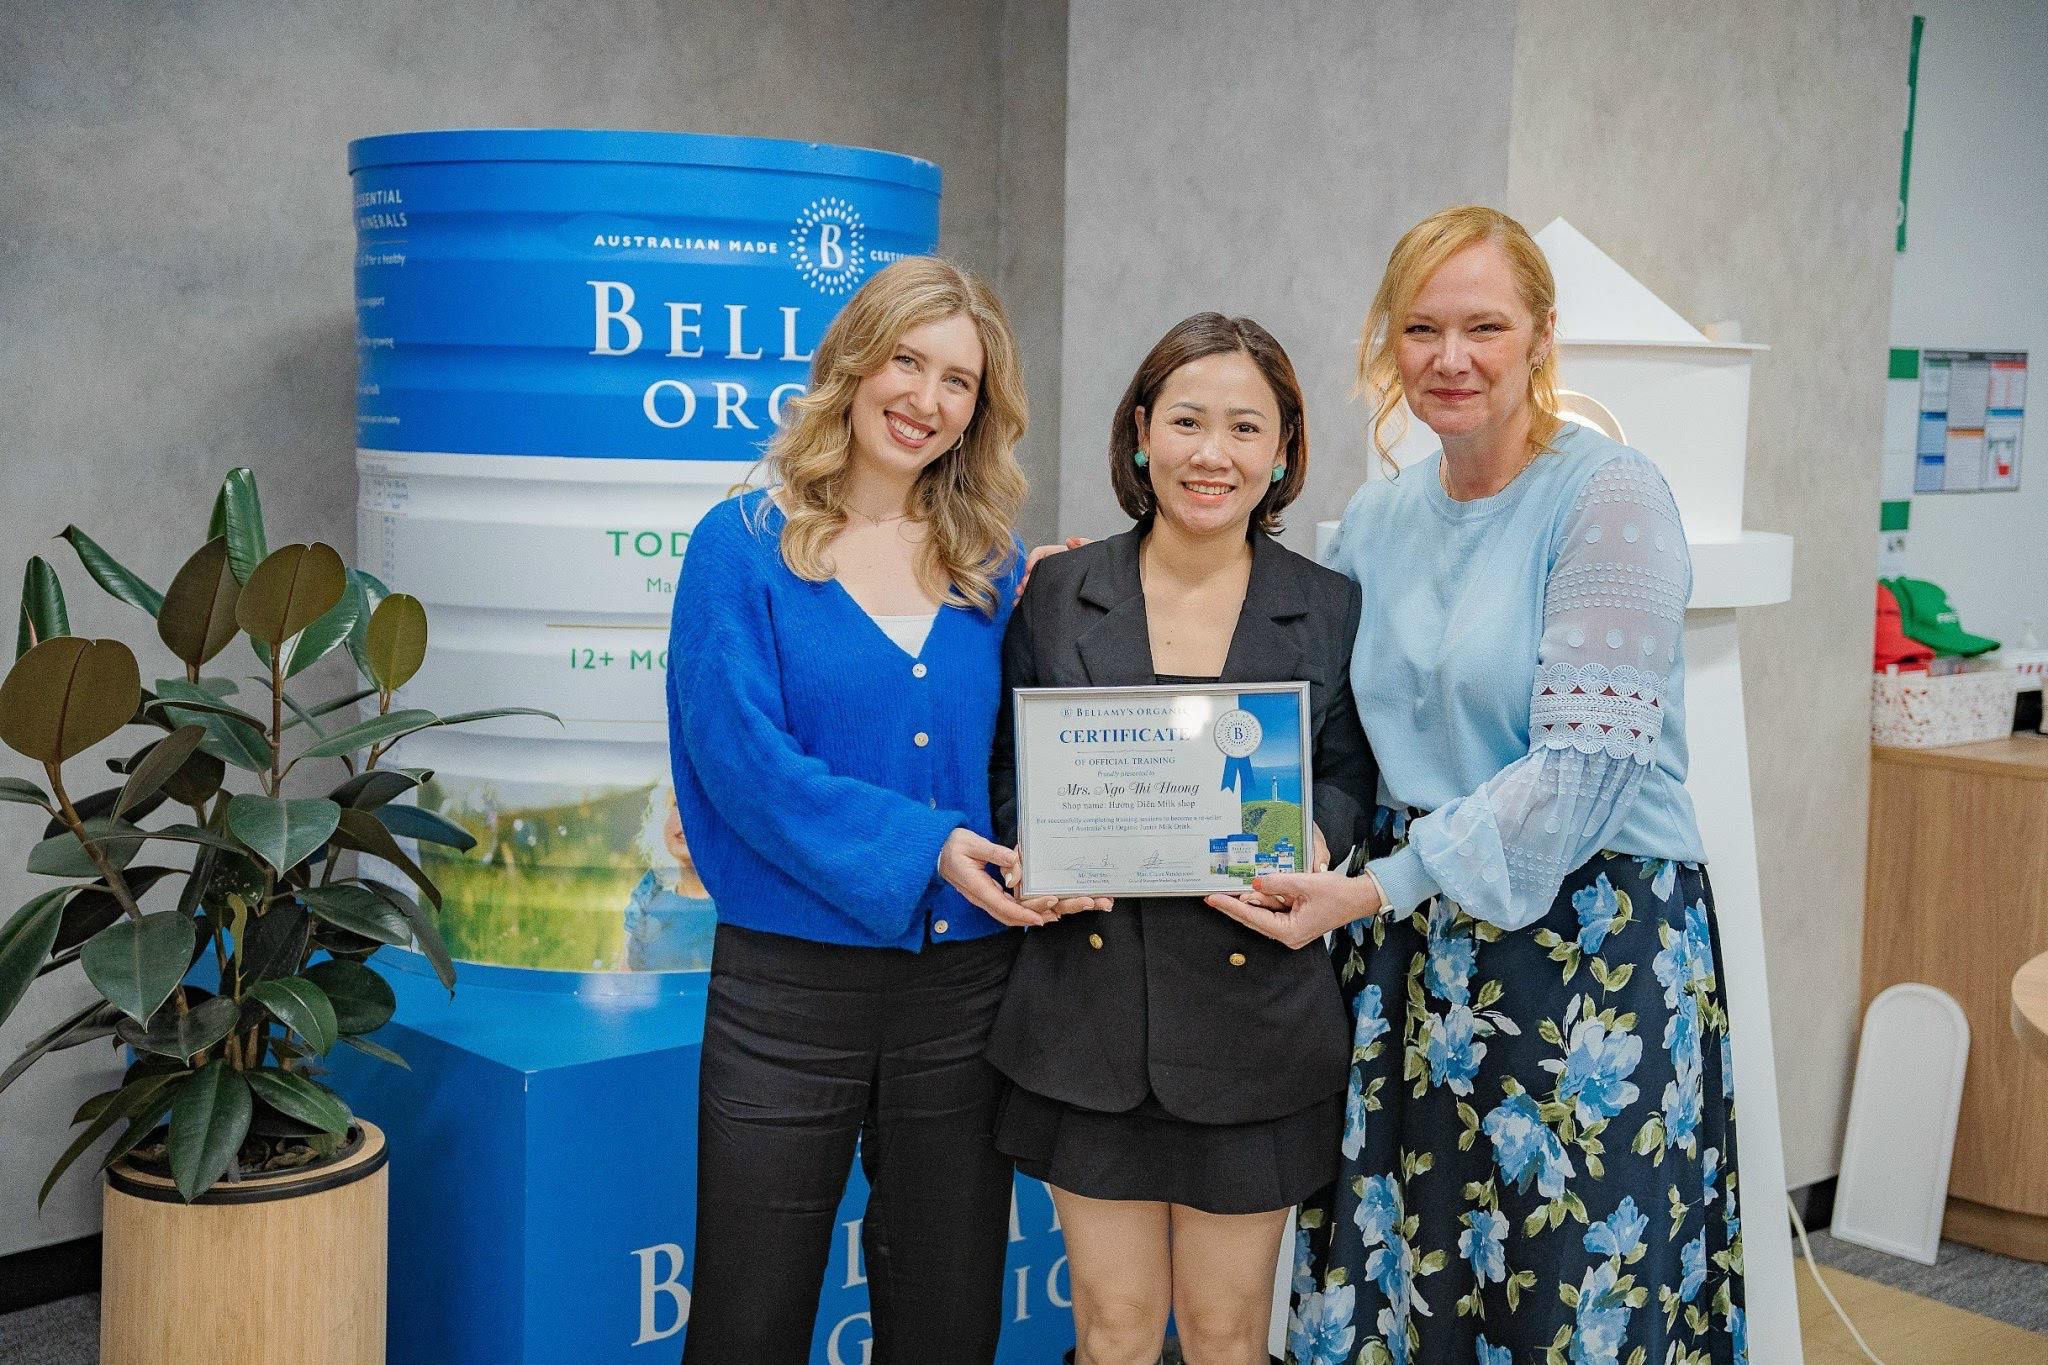 Chị Ngô Thị Hường cùng những chia sẻ đặc biệt khi làm đại sứ thương hiệu Bellamy’s Organic Việt Nam - 3